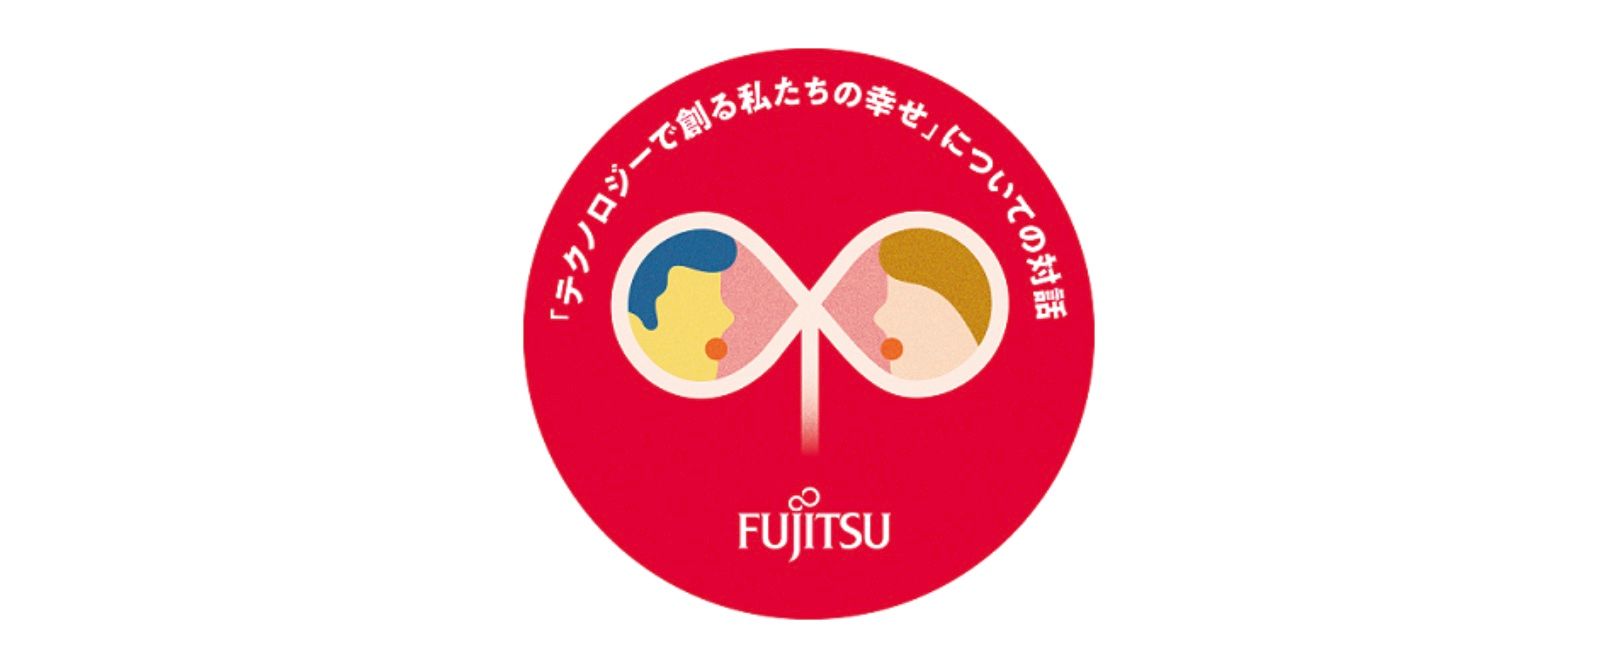 Fujitsu uczestniczy w działaniach mających na celu wsłuchiwanie się w głosy przyszłych pokoleń w celu promowania dobrobytu społecznego w Japonii